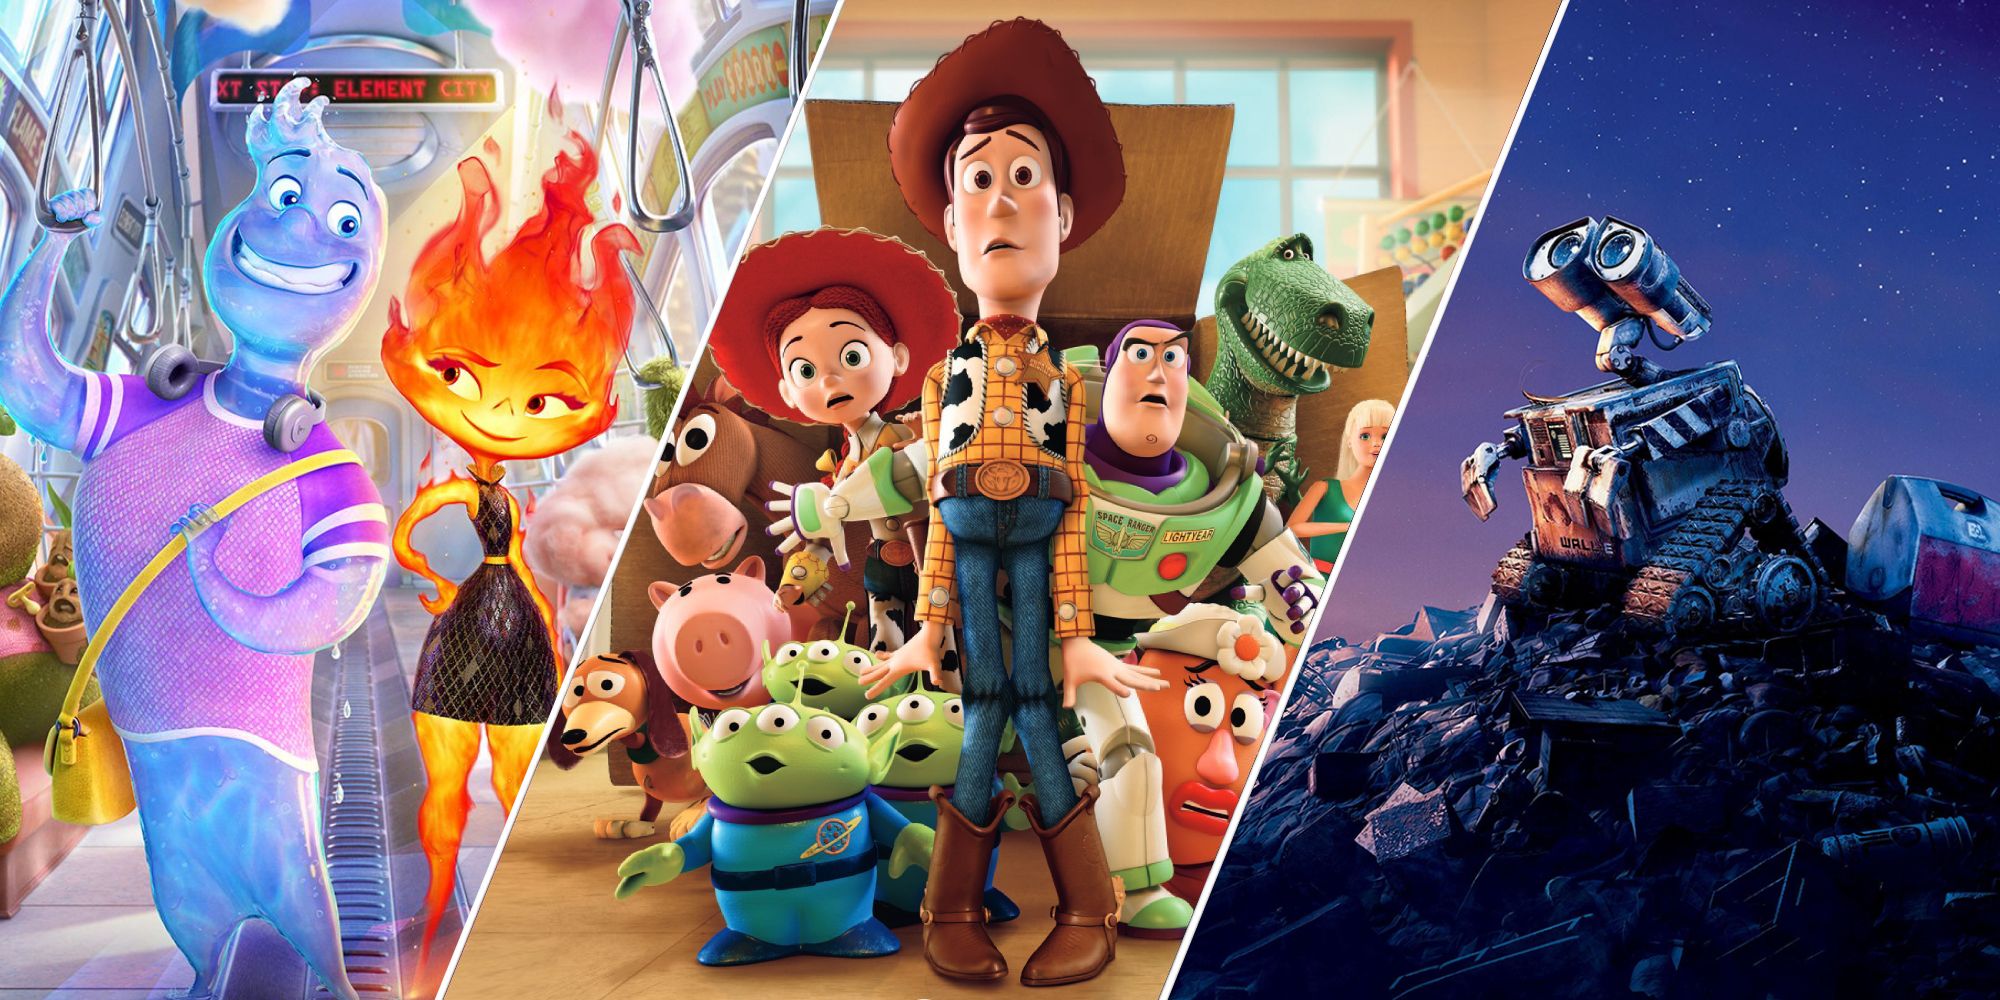 Best-Looking Pixar Movies